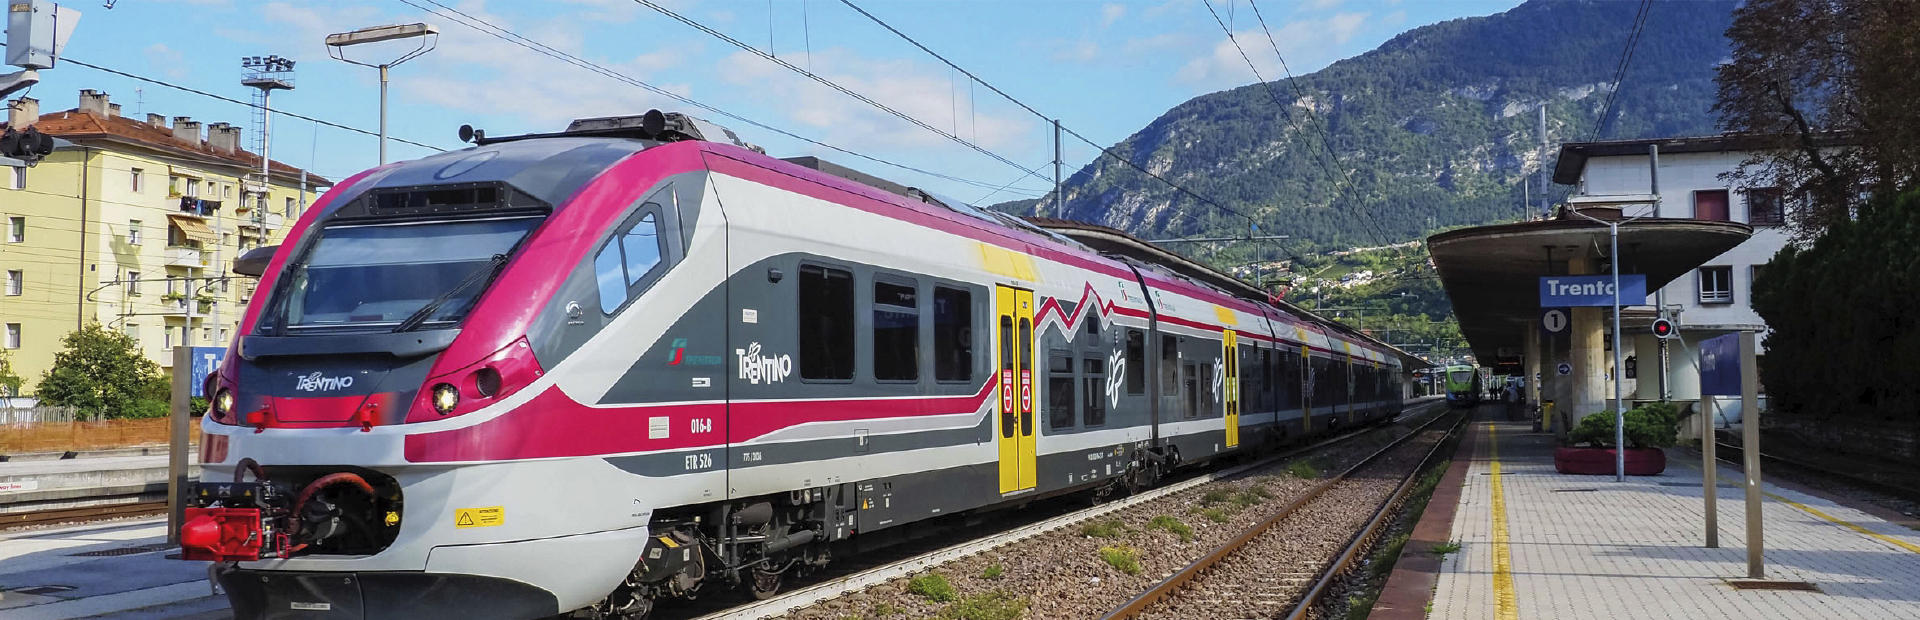  Corridoio del Brennero -  Tratto della Provincia autonoma di Trento